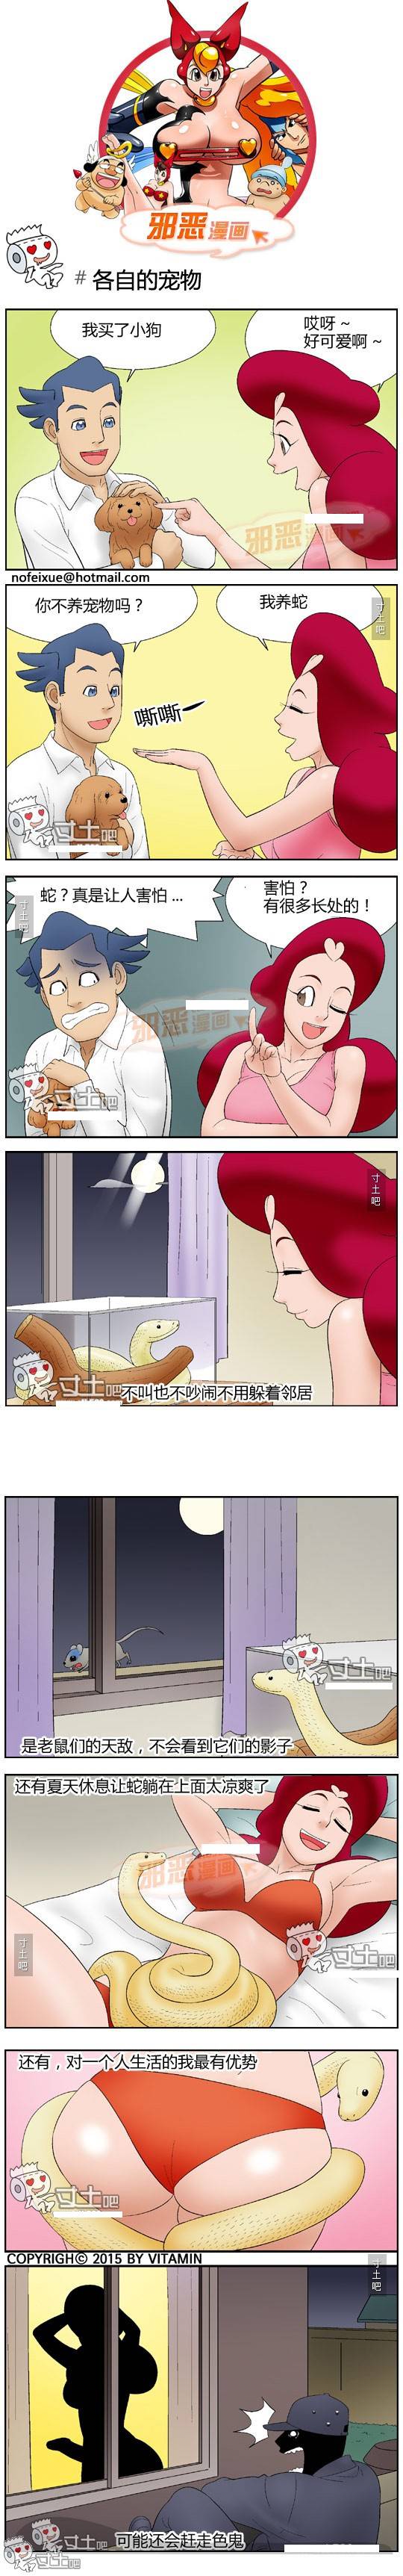 日本邪恶少女漫画大全 养宠物蛇的好处